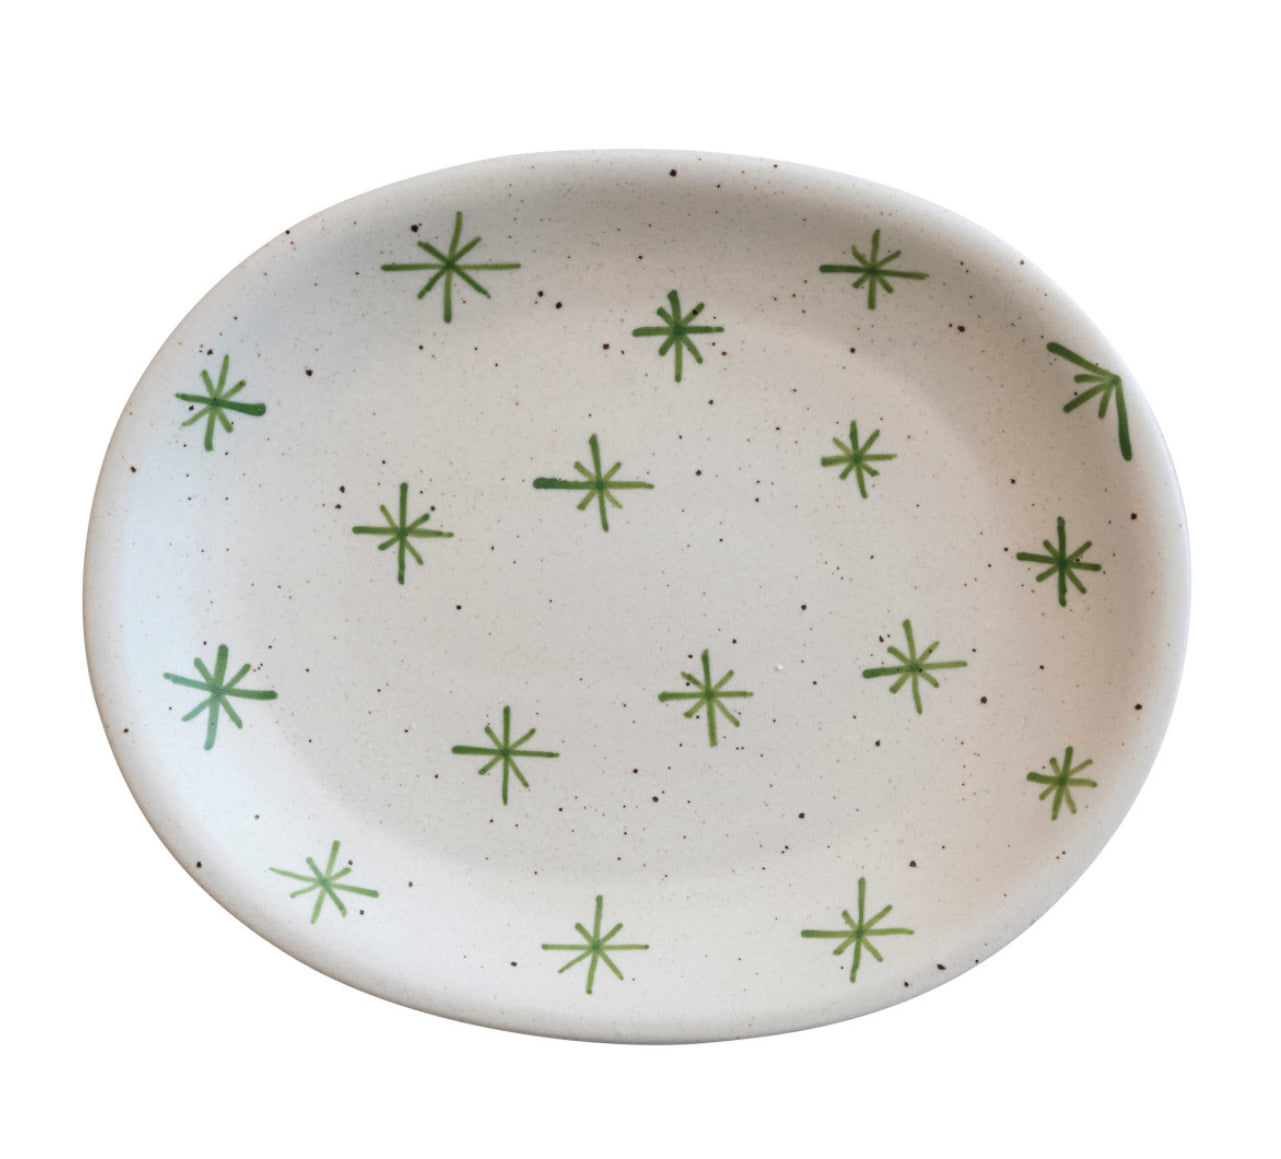 Hand painted Stoneware Platter w/Stars